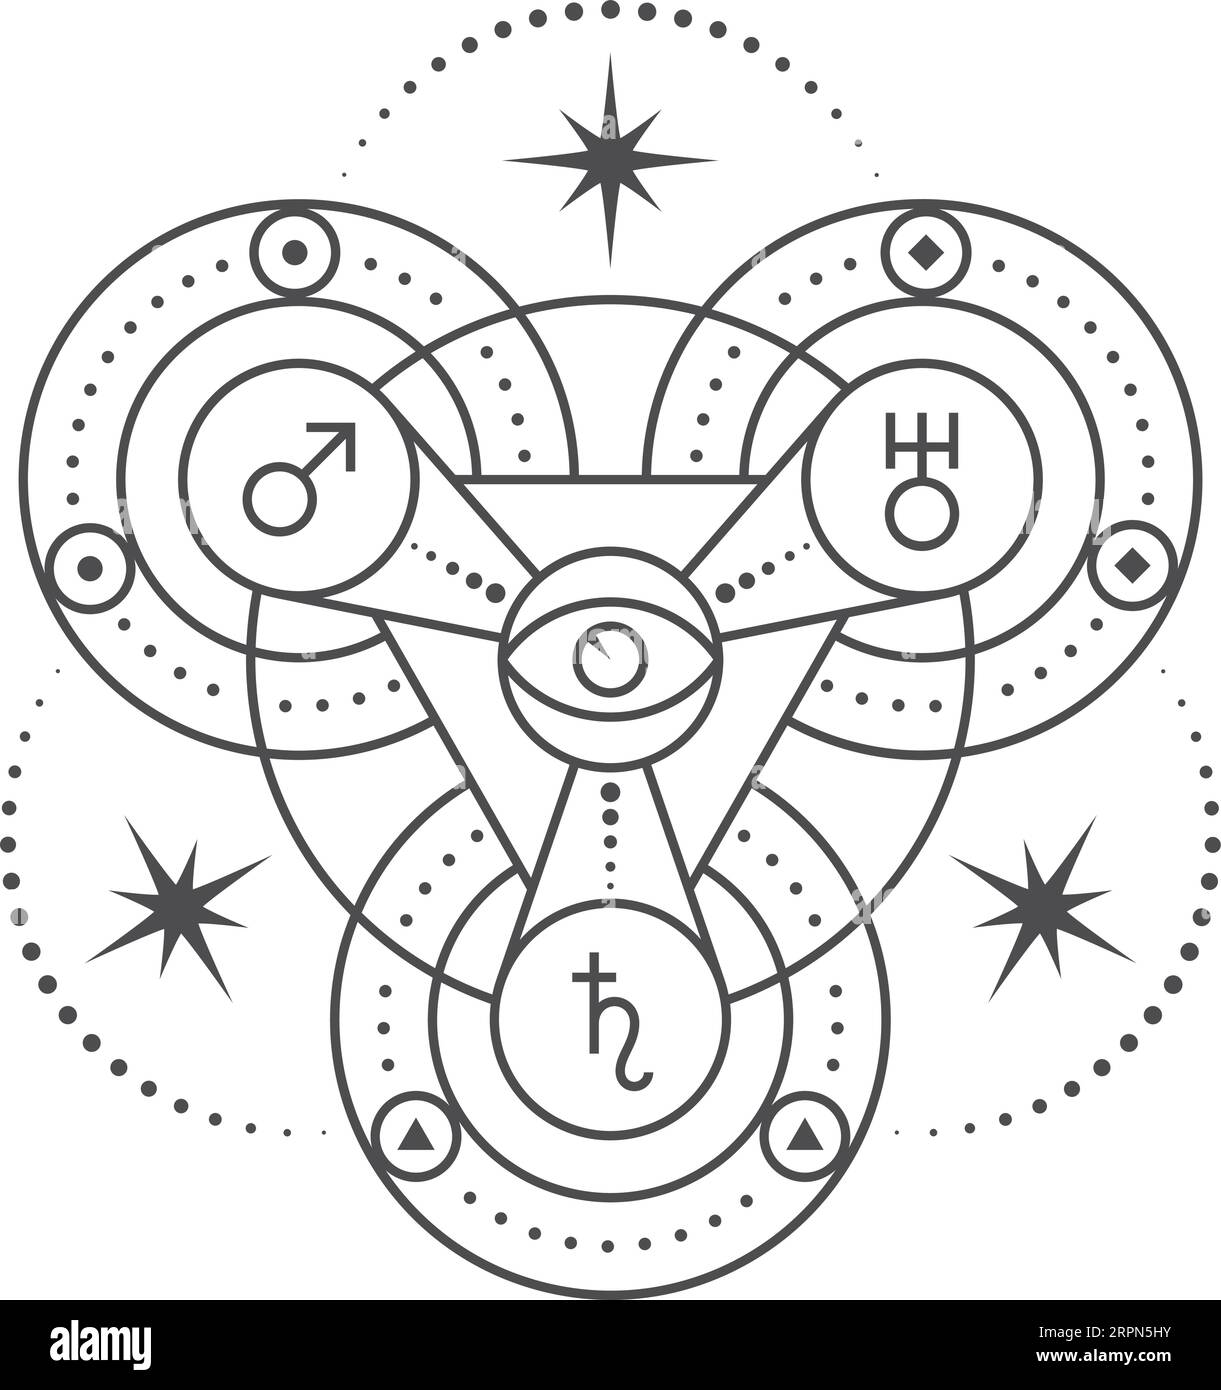 Okkultes Symbol mit astrologischen Zeichen. Ritualzauber-Ikone Stock Vektor